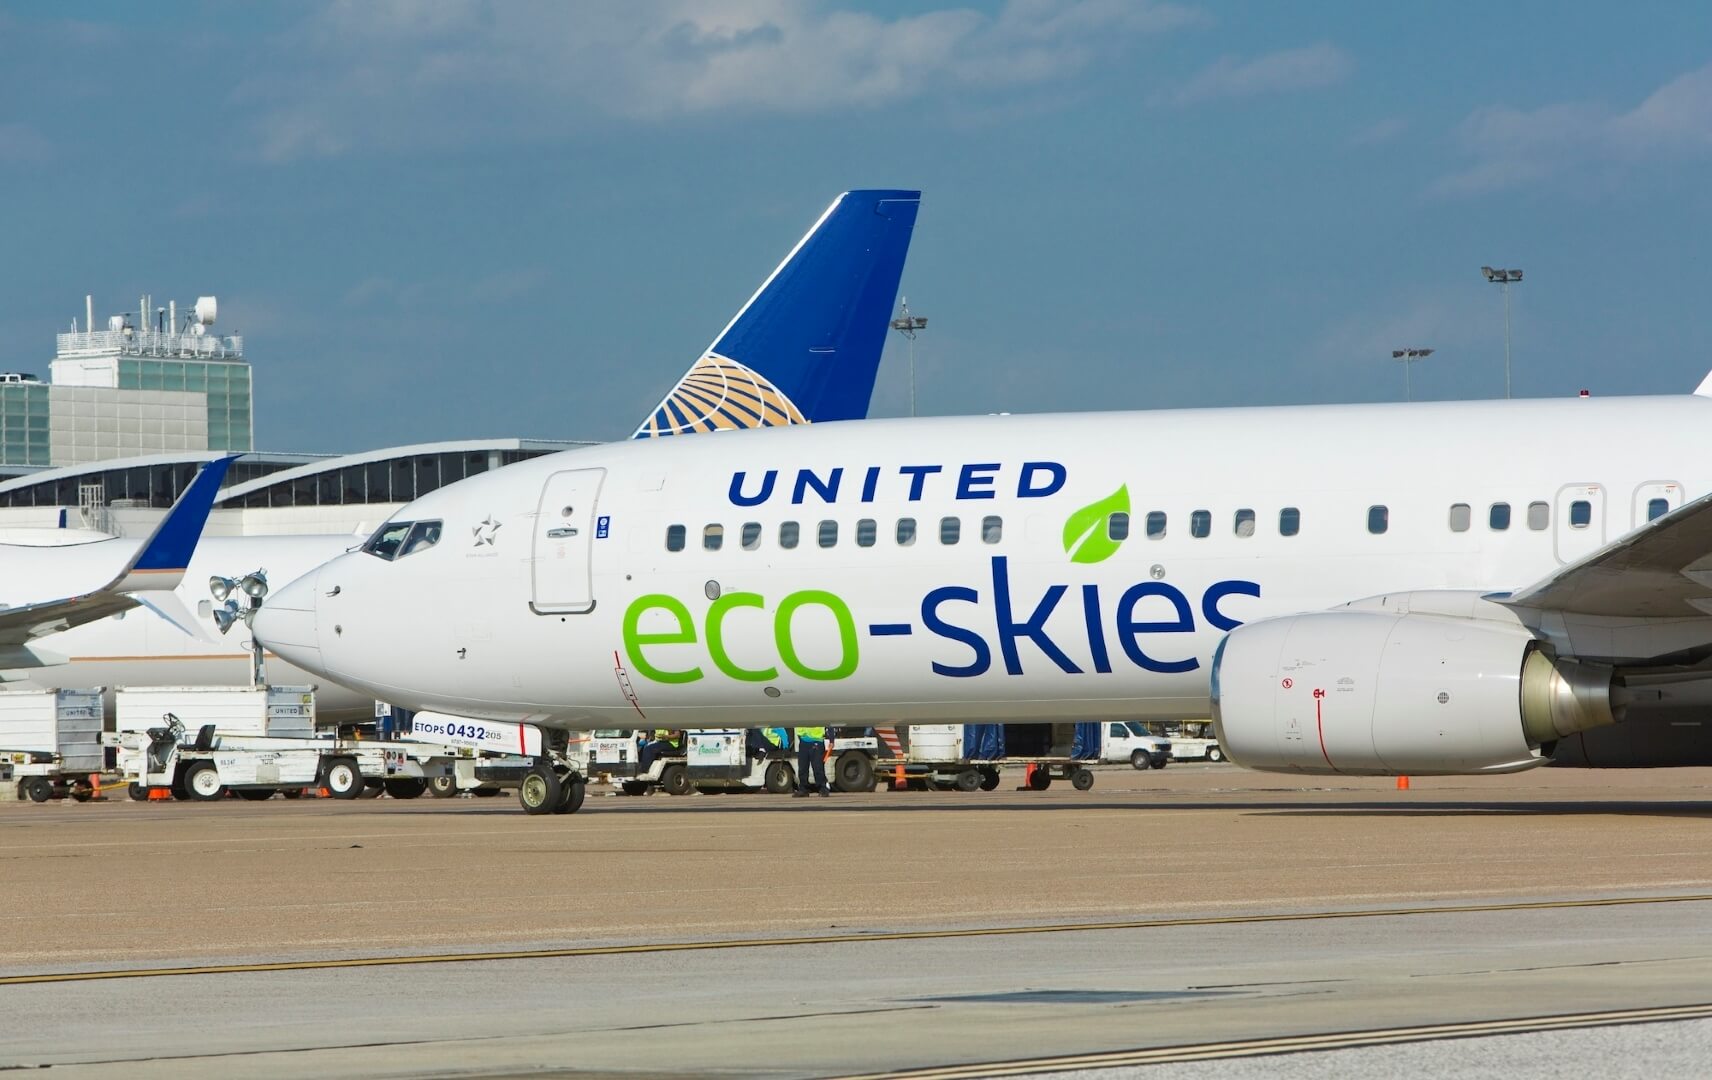 United Airlines Flugzeug mit Aufschrift eco-skies